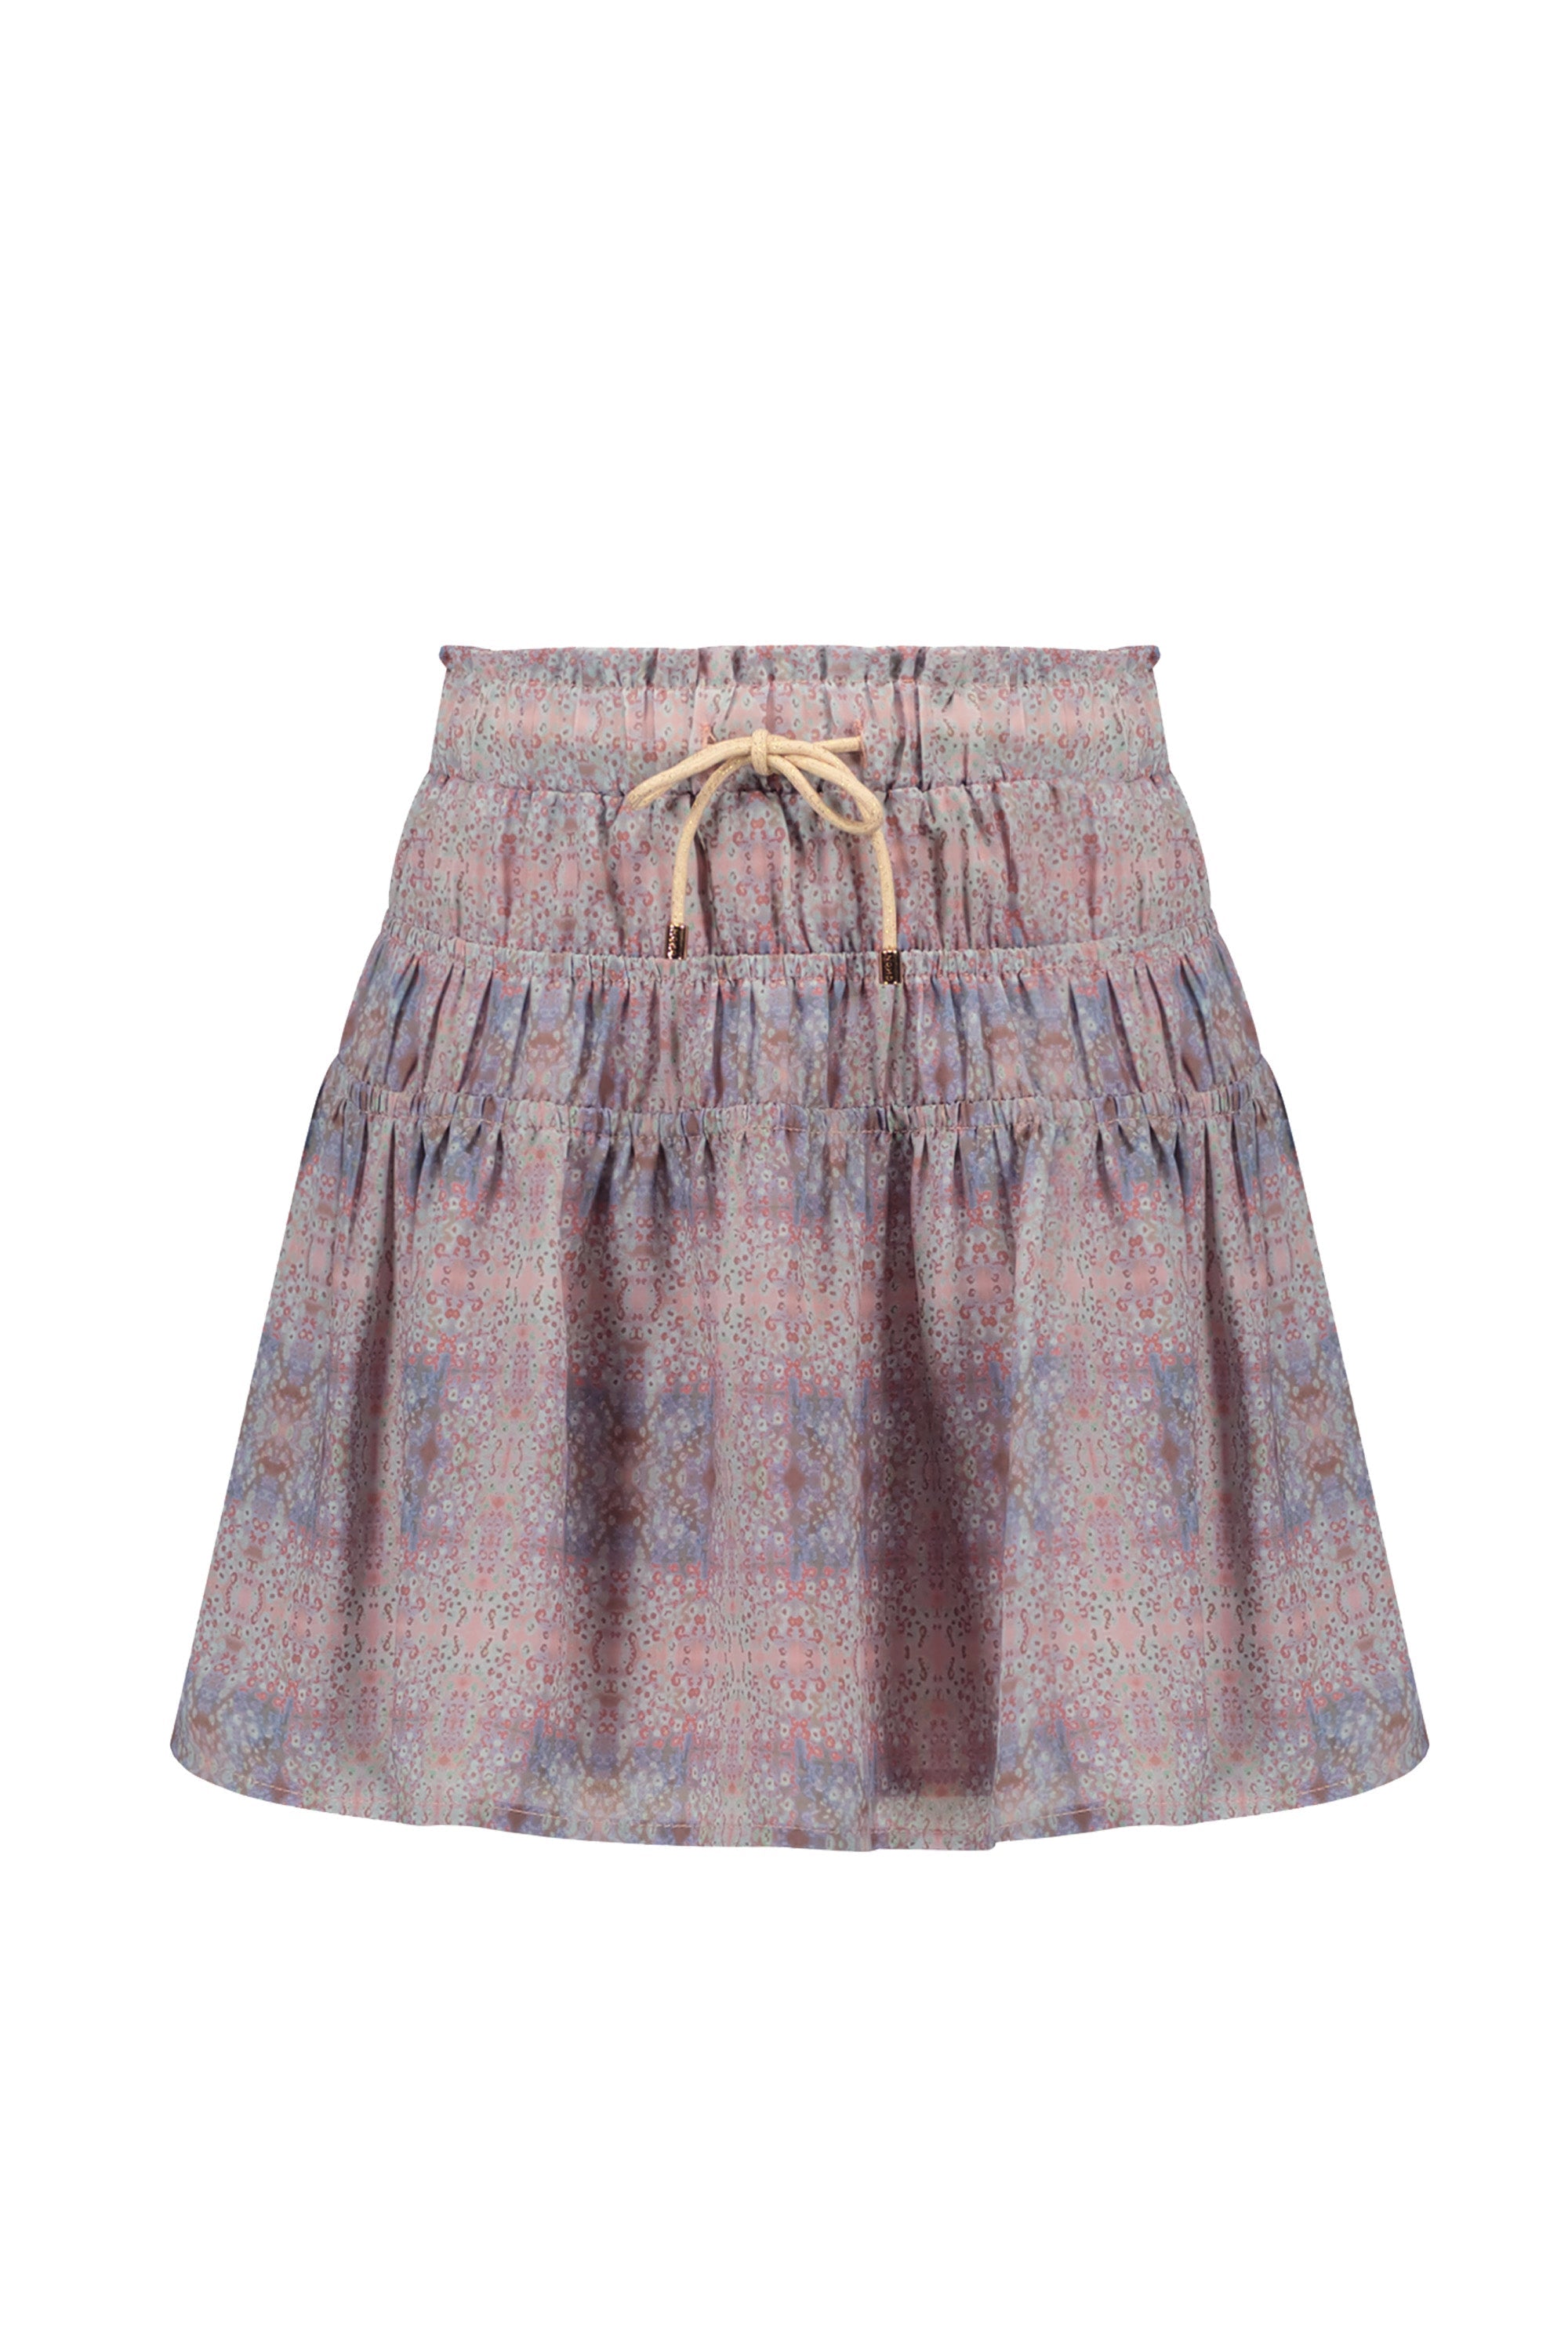 Meisjes NellieB short skirt with elasticated details van NoNo in de kleur Rosy Ginger in maat 134-140.